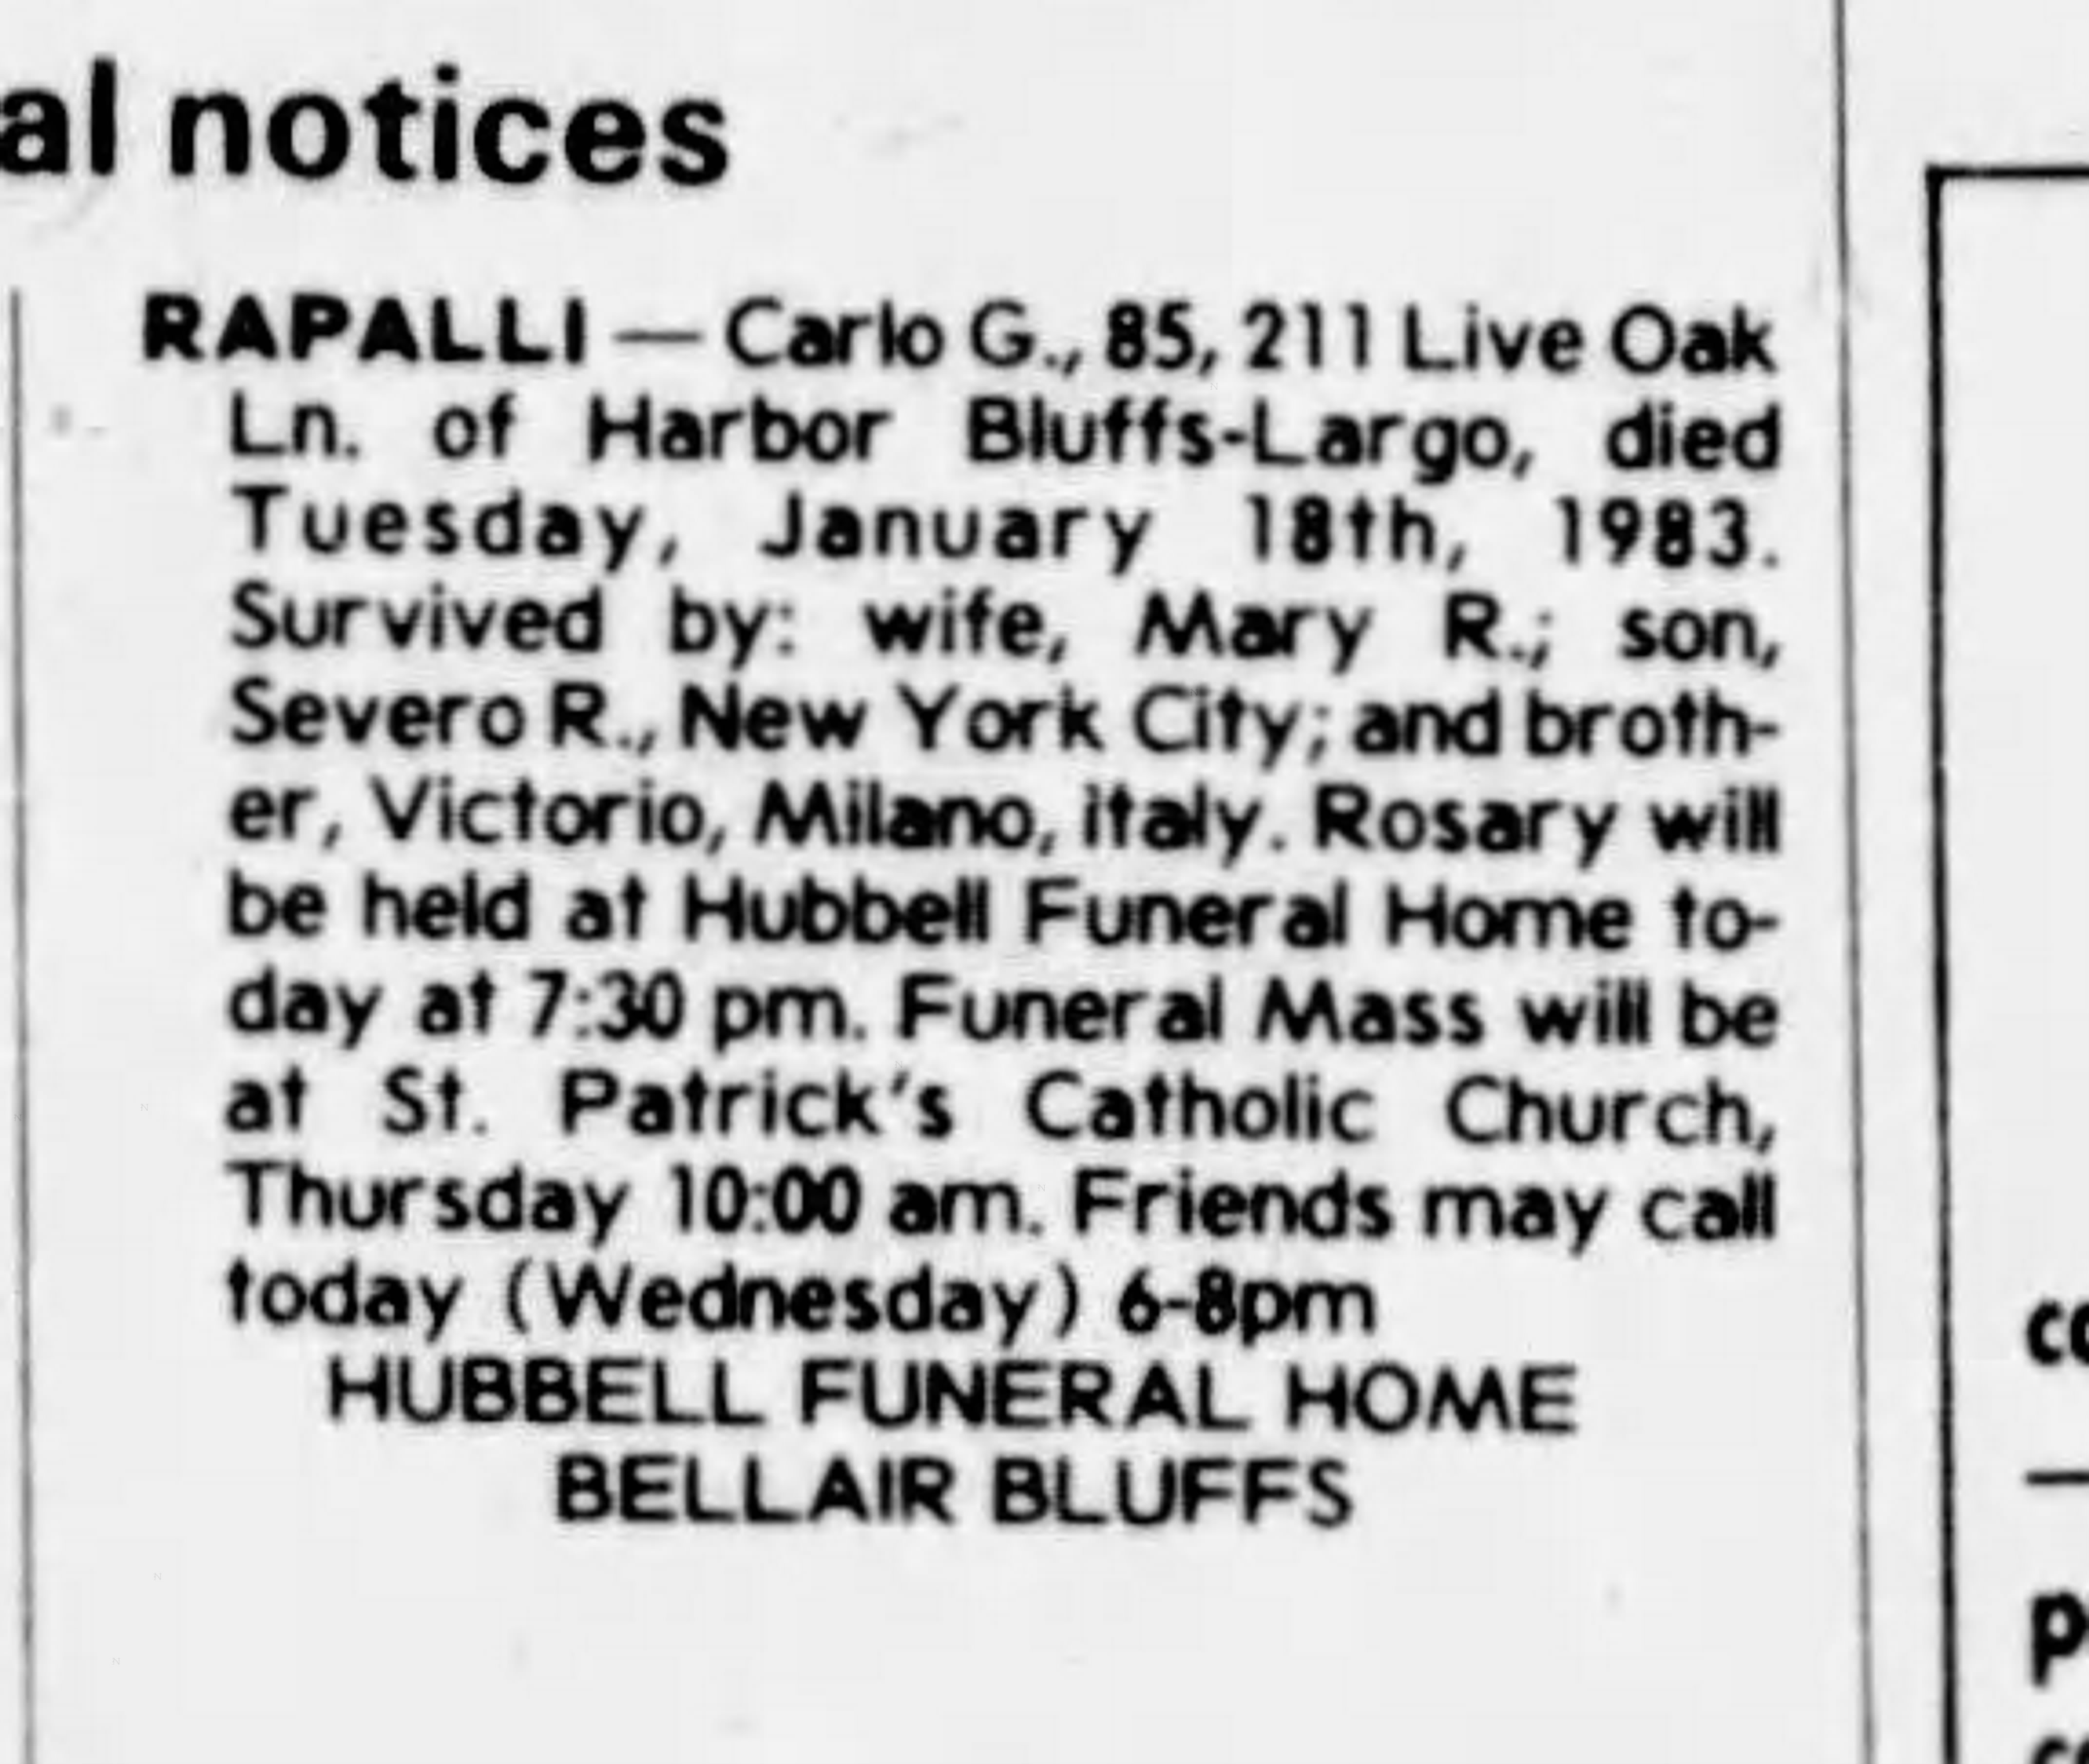 Tampa_Bay_Times_Wed__Jan_19__1983_2